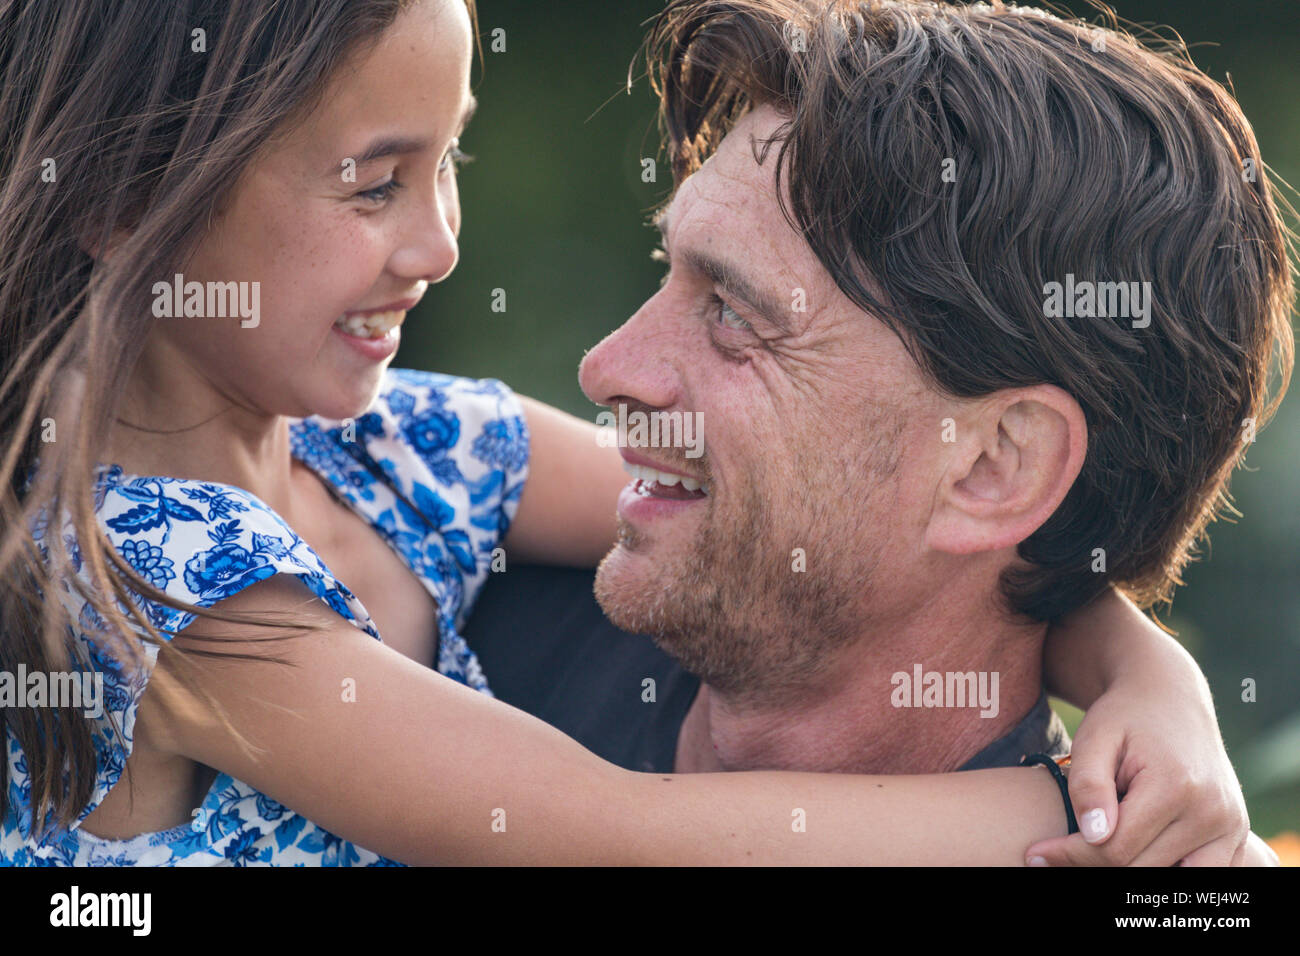 Kaukasische Vater Holding gemischt ethnischen asiatischen 9-jährige Tochter, beide glücklich, San Jose, Kalifornien Stockfoto